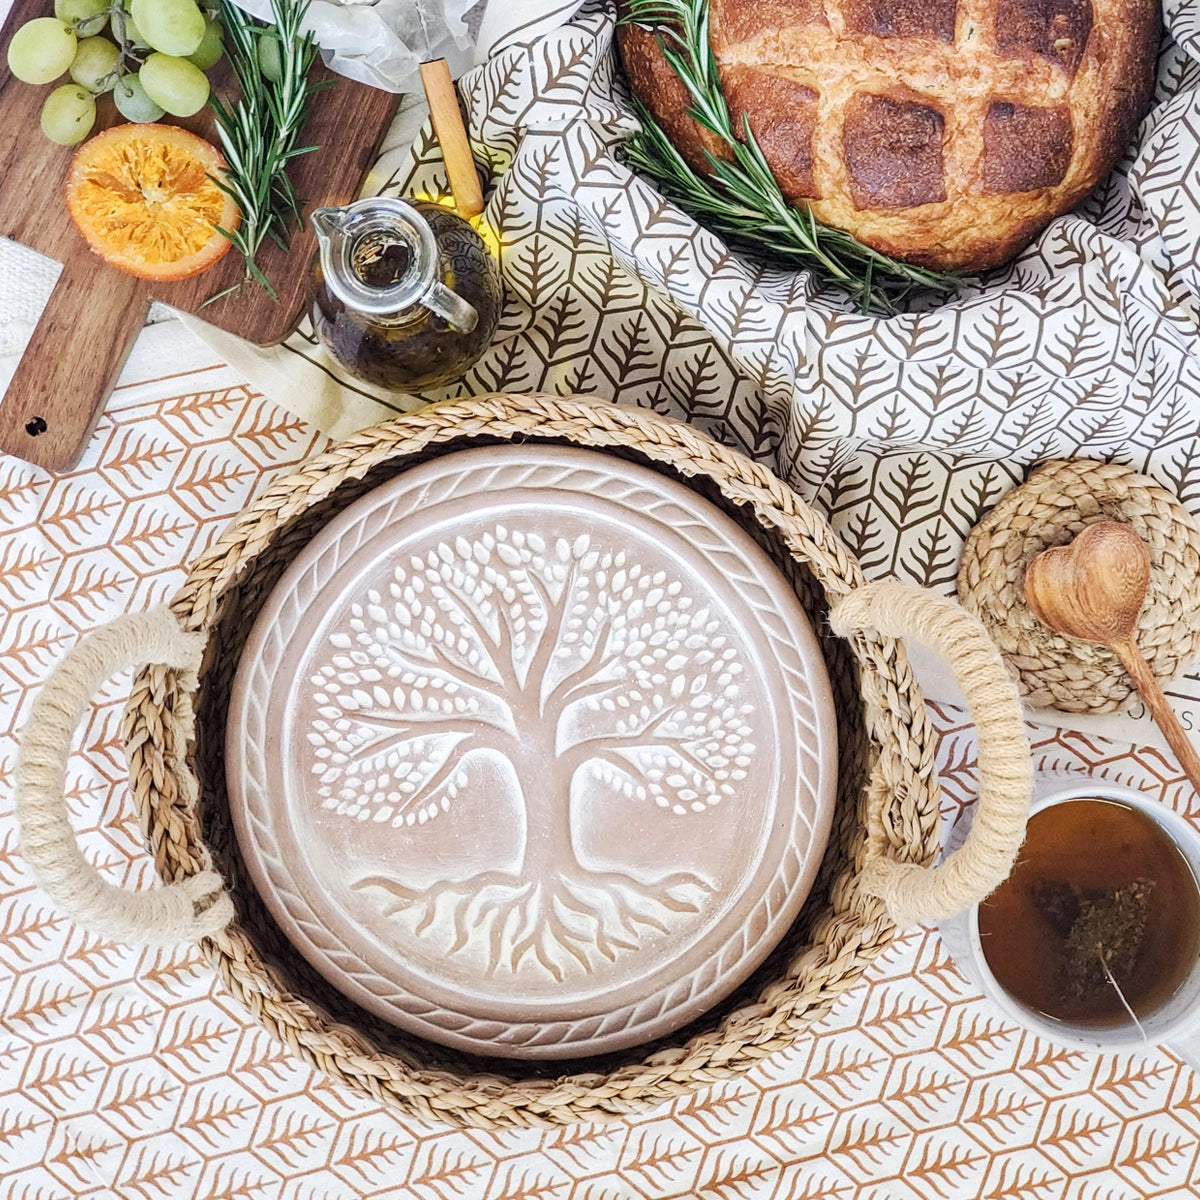 Handmade Bread Warmer & Wicker Basket - Tree of Life